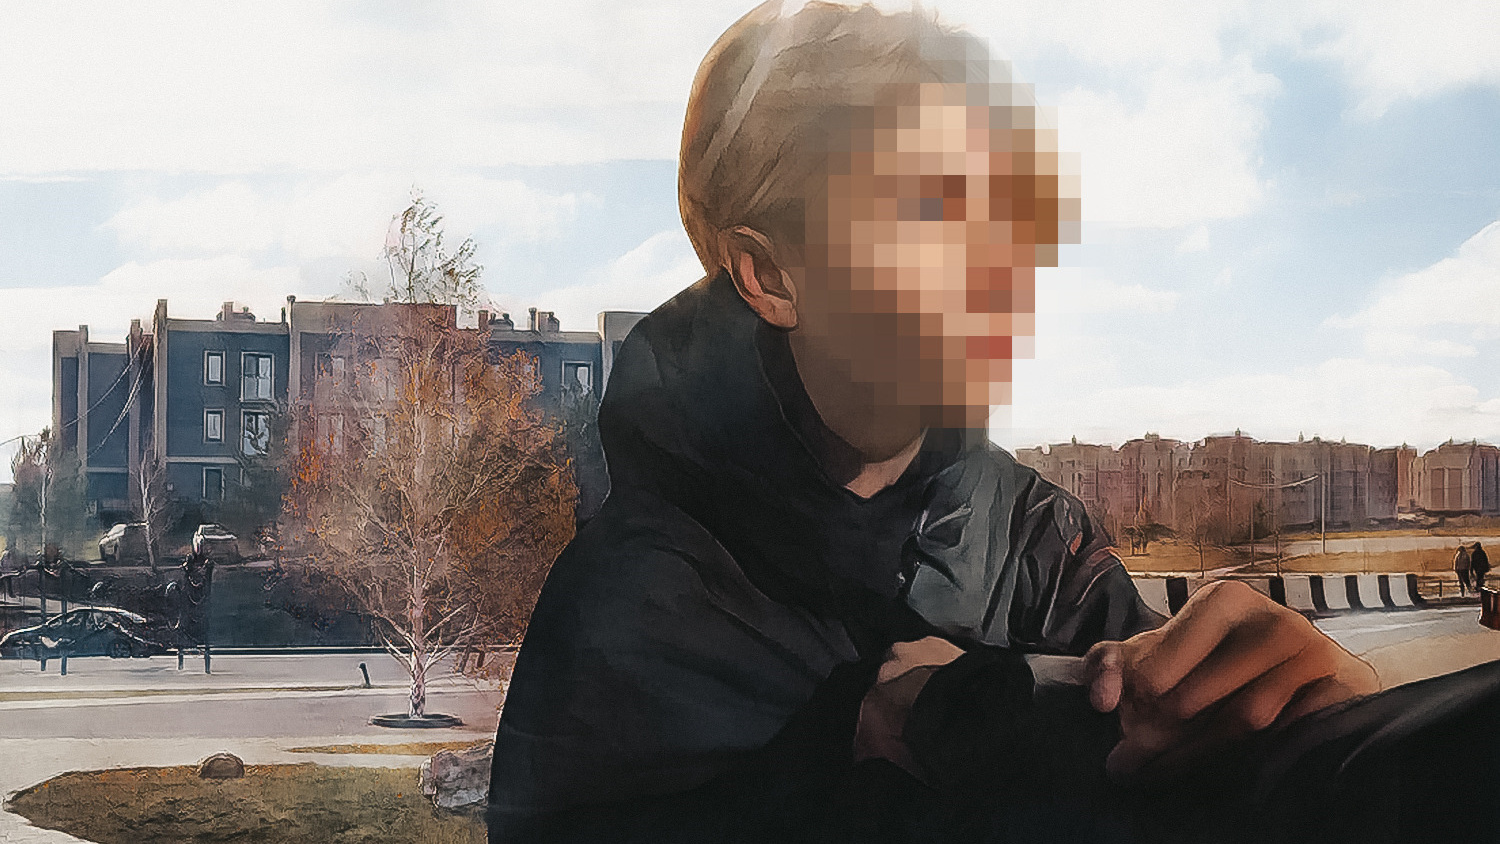 «Вы мне ничего не сделаете»: трудный подросток нападает на жителей поселков под Челябинском